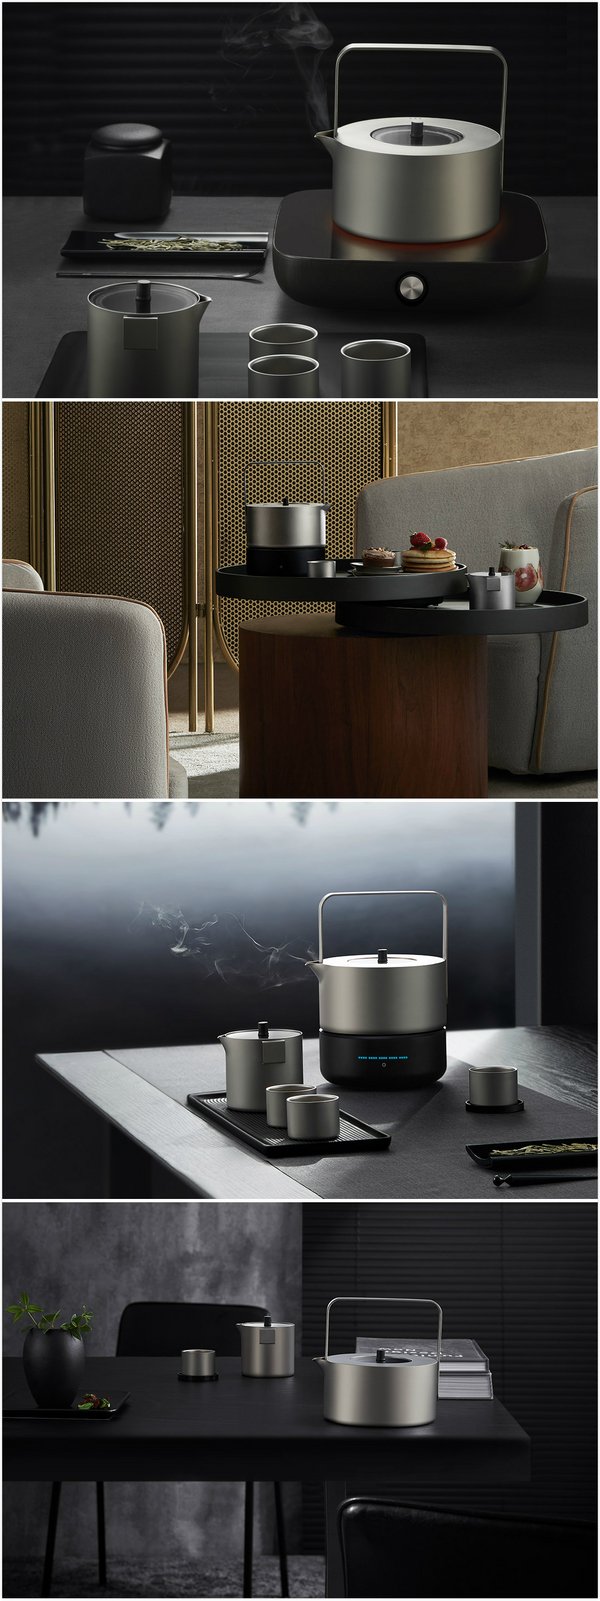 太火鸟科技与keith铠斯联合推出纯钛-现代茶具 引领生活器皿新趋势